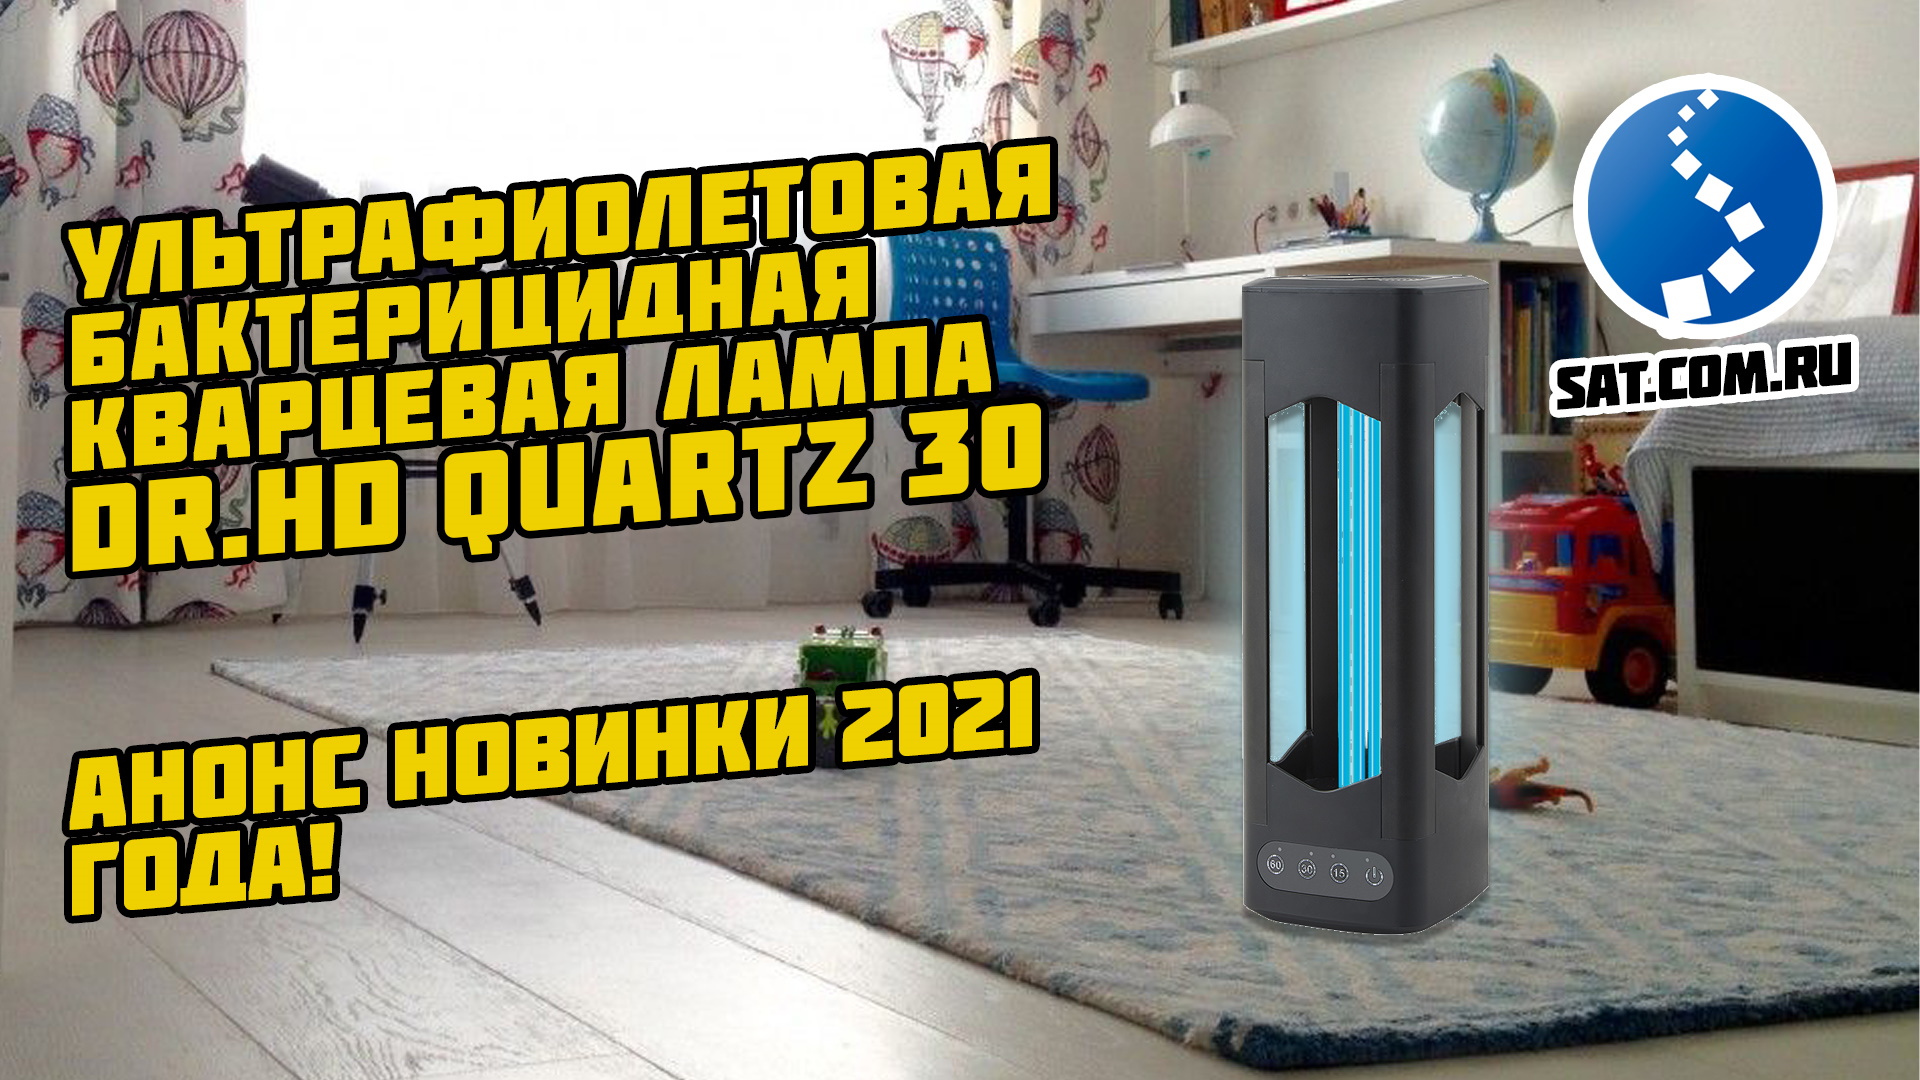 Анонс новинки 2021 Ультрафиолетовая бактерицидная лампа Dr.HD Quartz 30